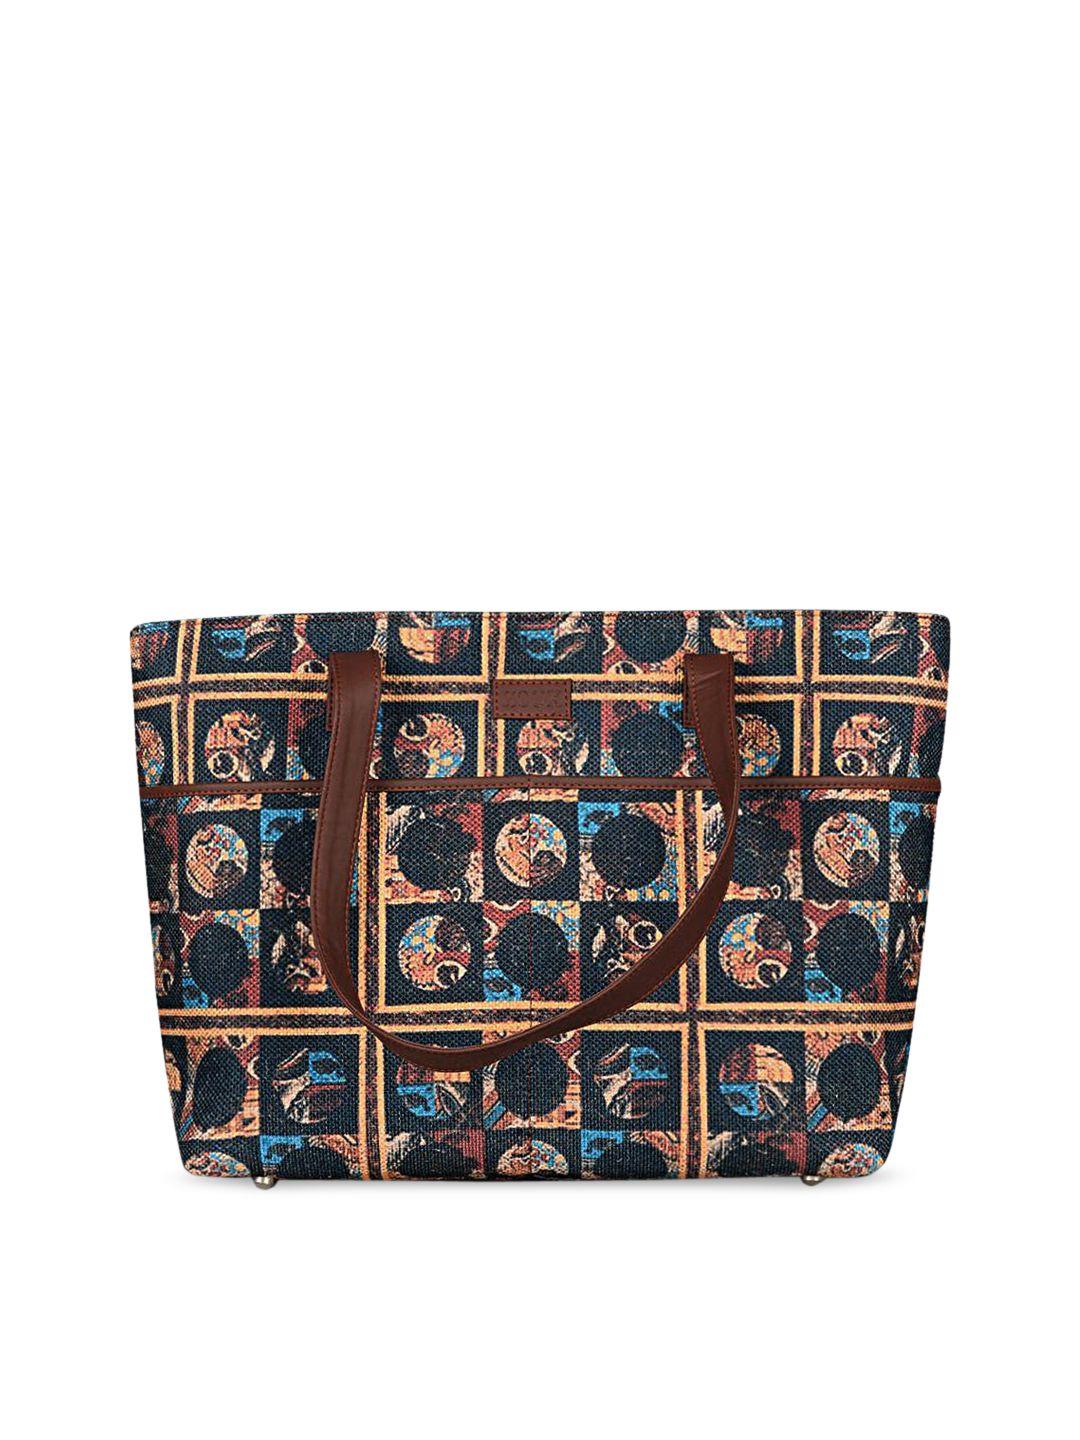 zouk-brown-printed-shopper-tote-bag